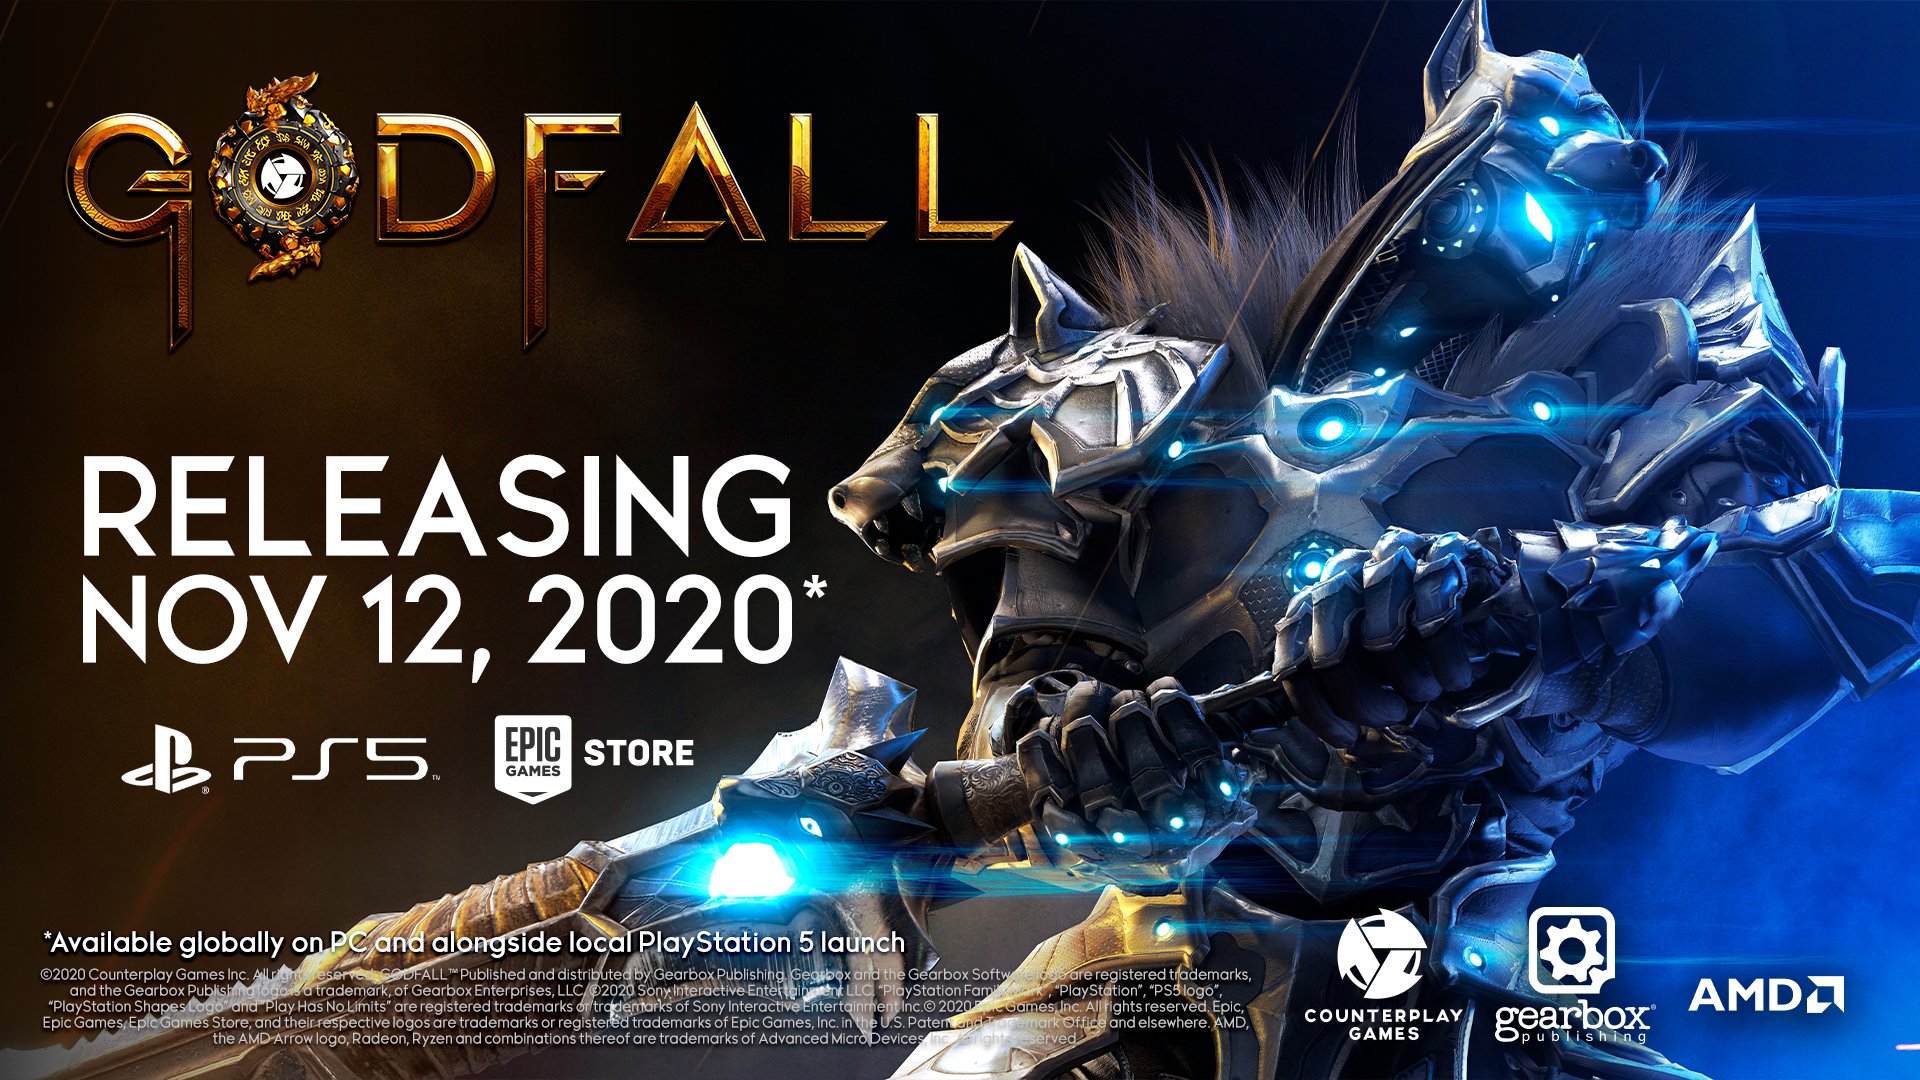 次世代ARPG《众神陨落》将于11月12日发售 迎接挑战